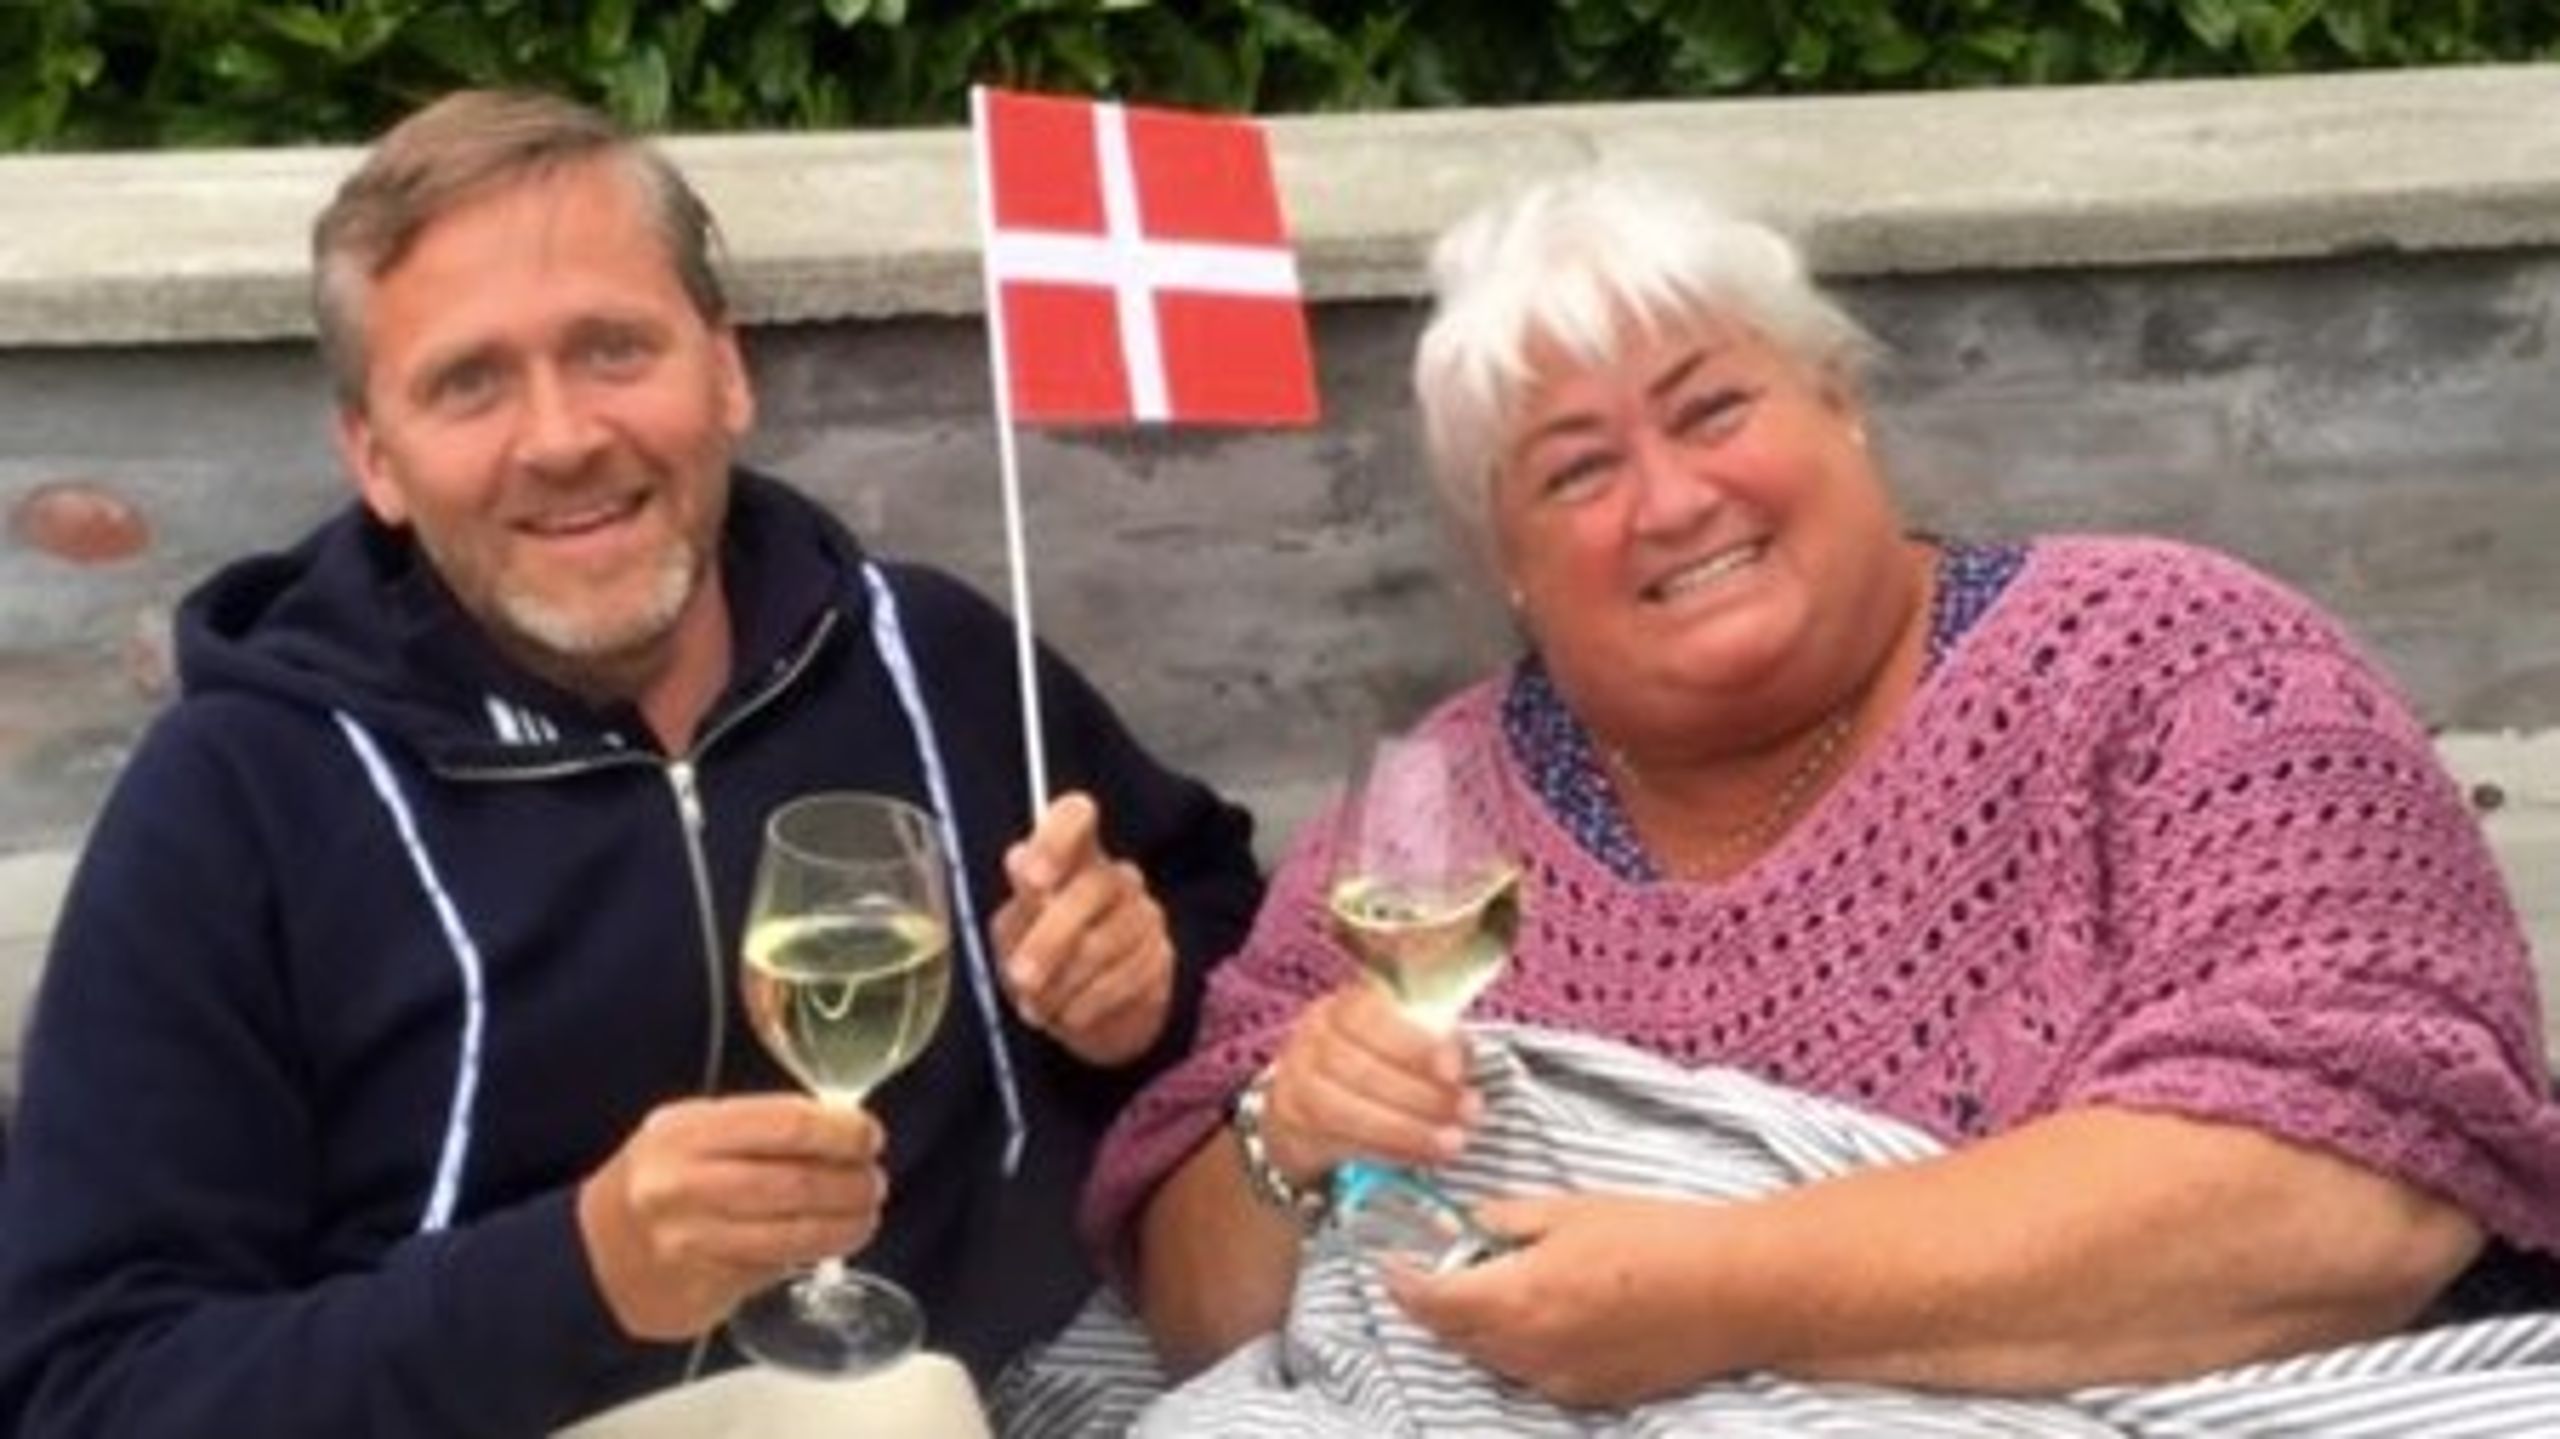 Liberal Alliancens&nbsp;Anders Samuelsen og Thyra Frank fejrer i Pinsen, at Liberal Alliance står til kanonvalg. I dag indtager de førstepladsen i David&nbsp;Trads’ politiske power-indeks.